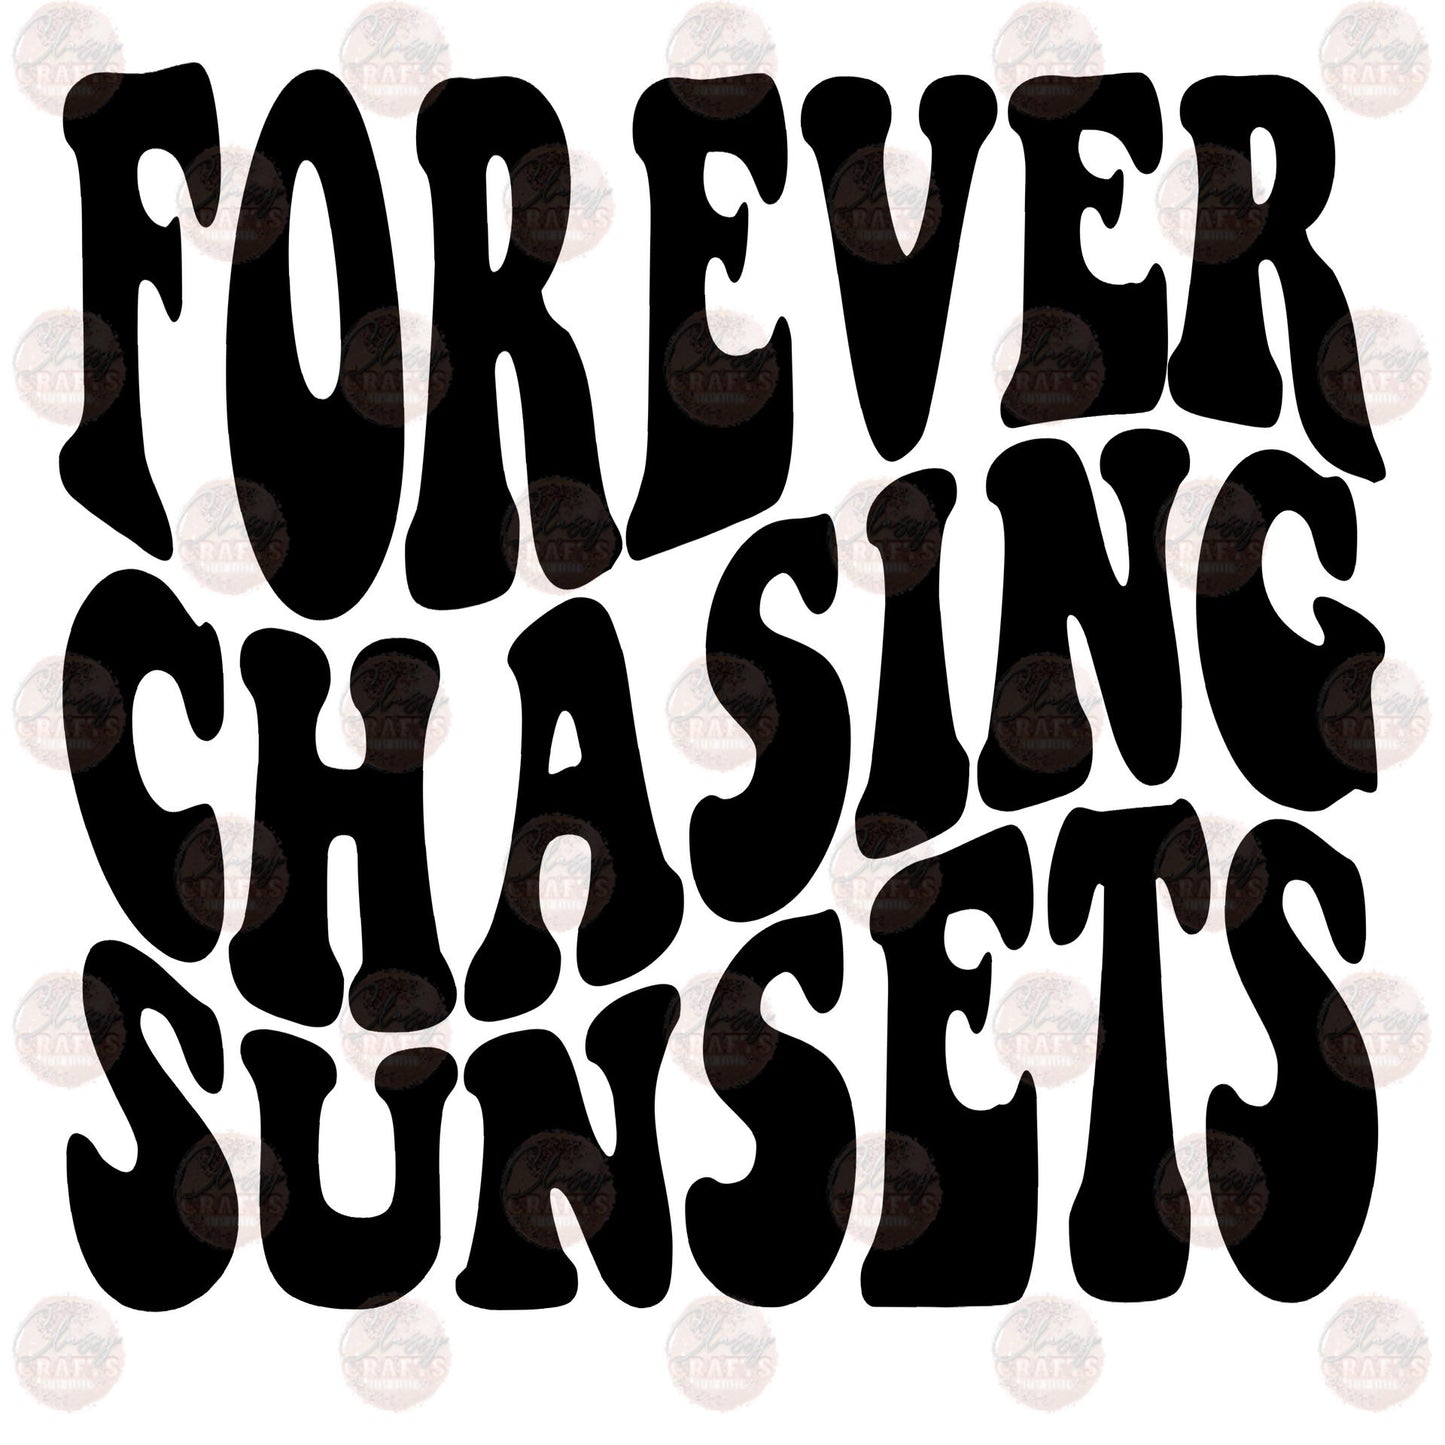 Forever Chasing Sunsets Transfer